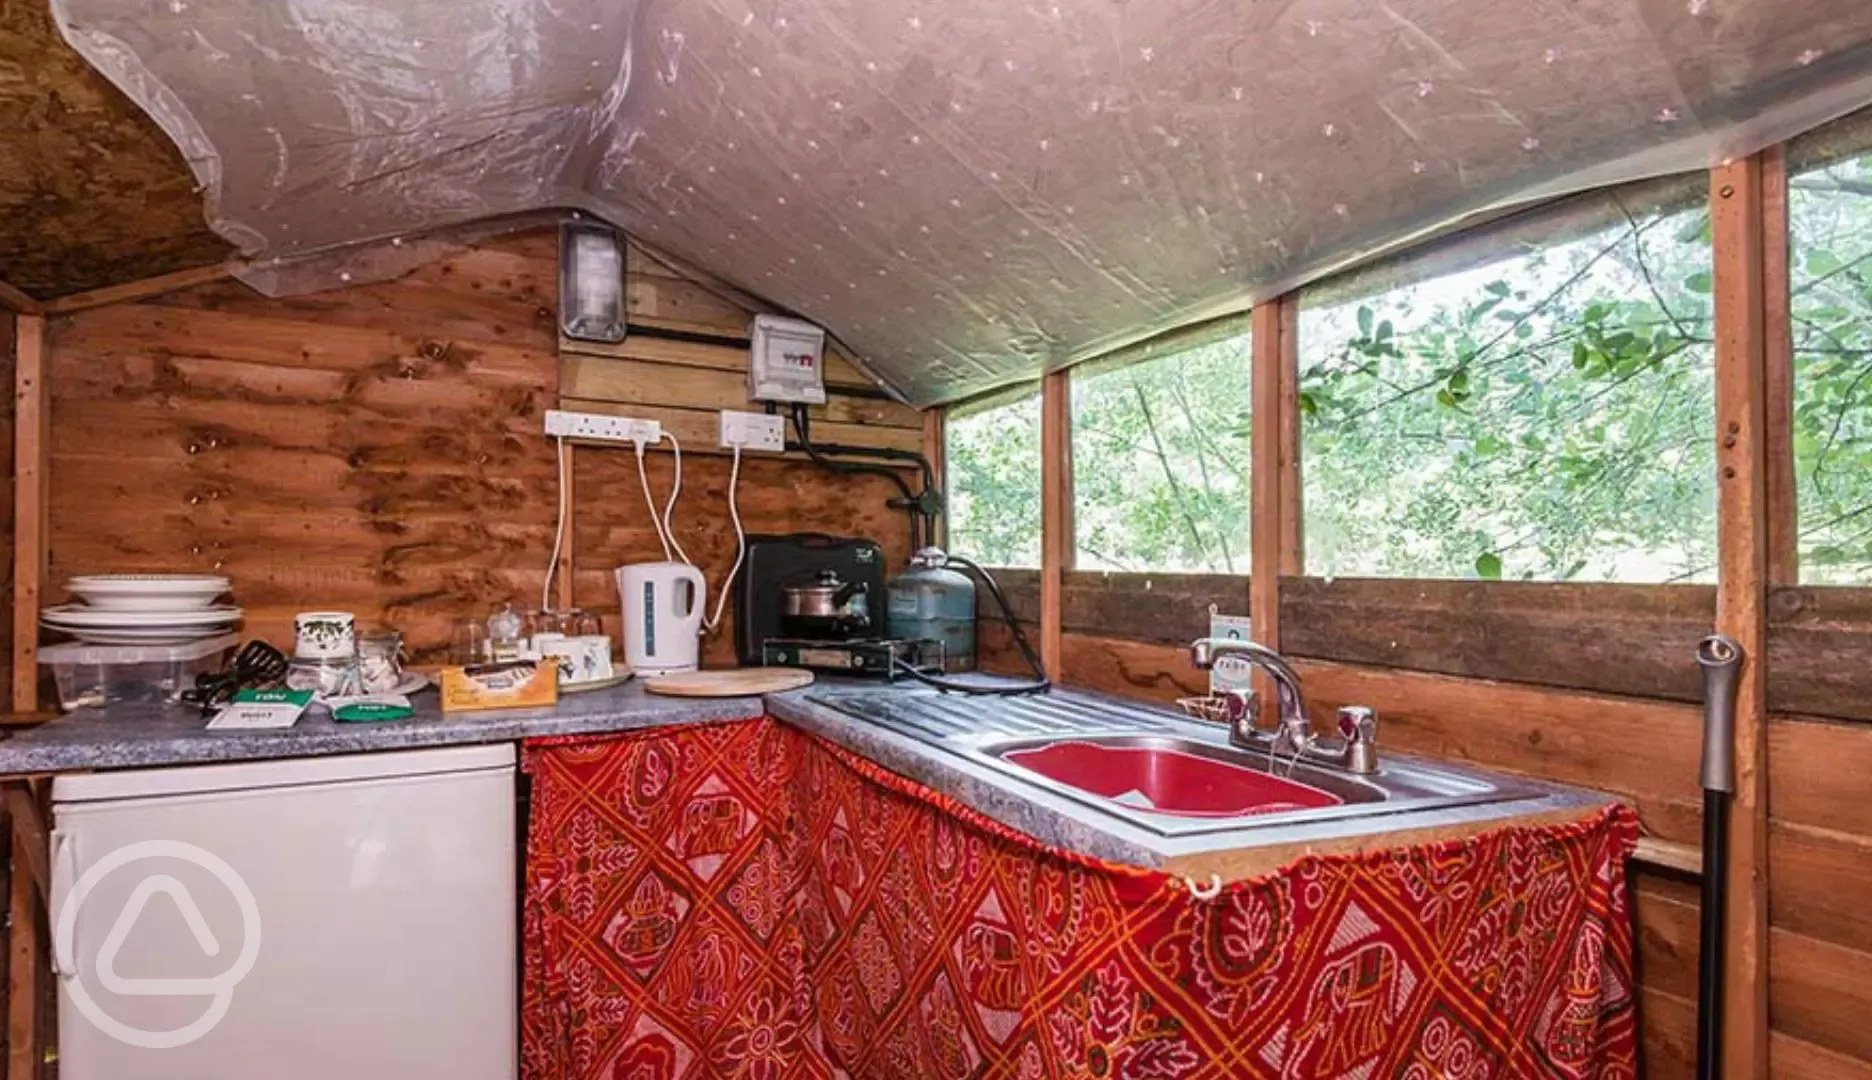 Camp kitchen interior